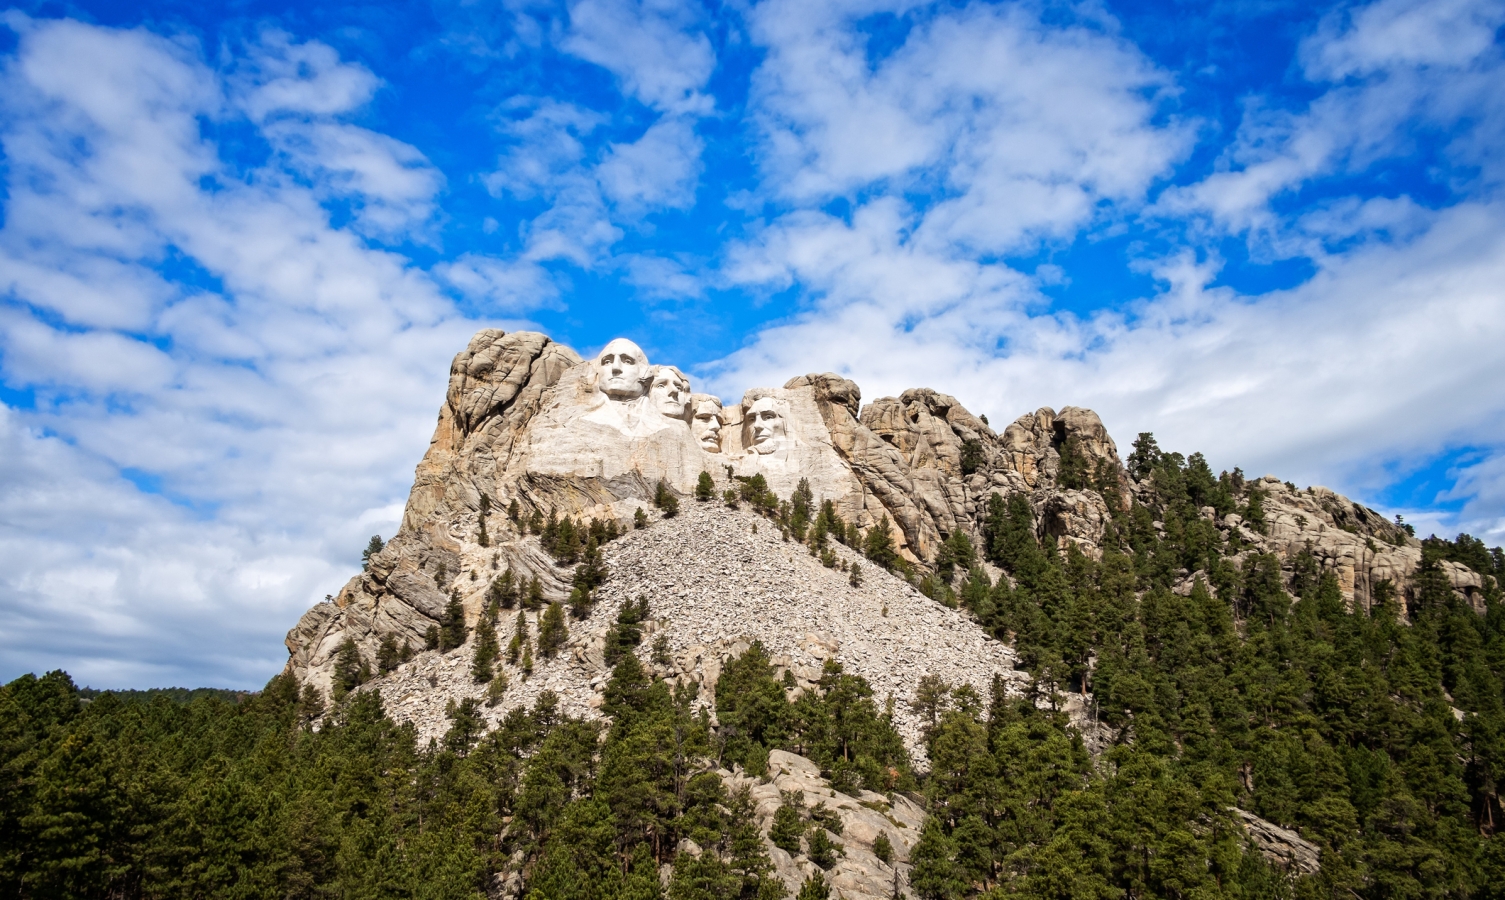 National Memorial, Mount Rushmore, South Dakota